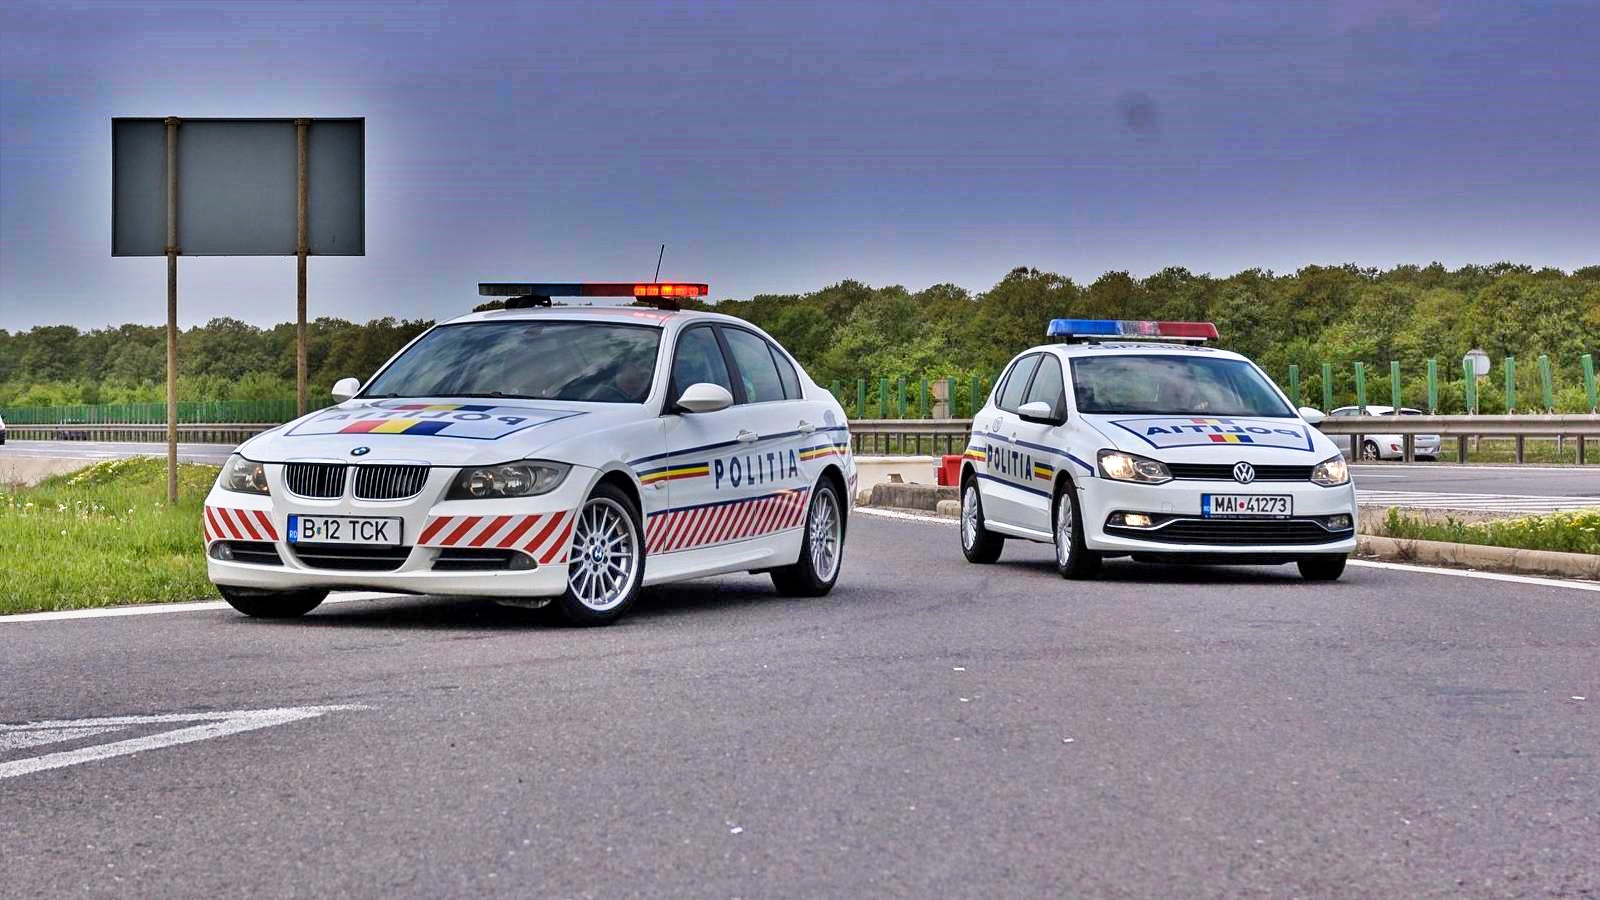 Romanian poliisi VAROITUS autopetoksista